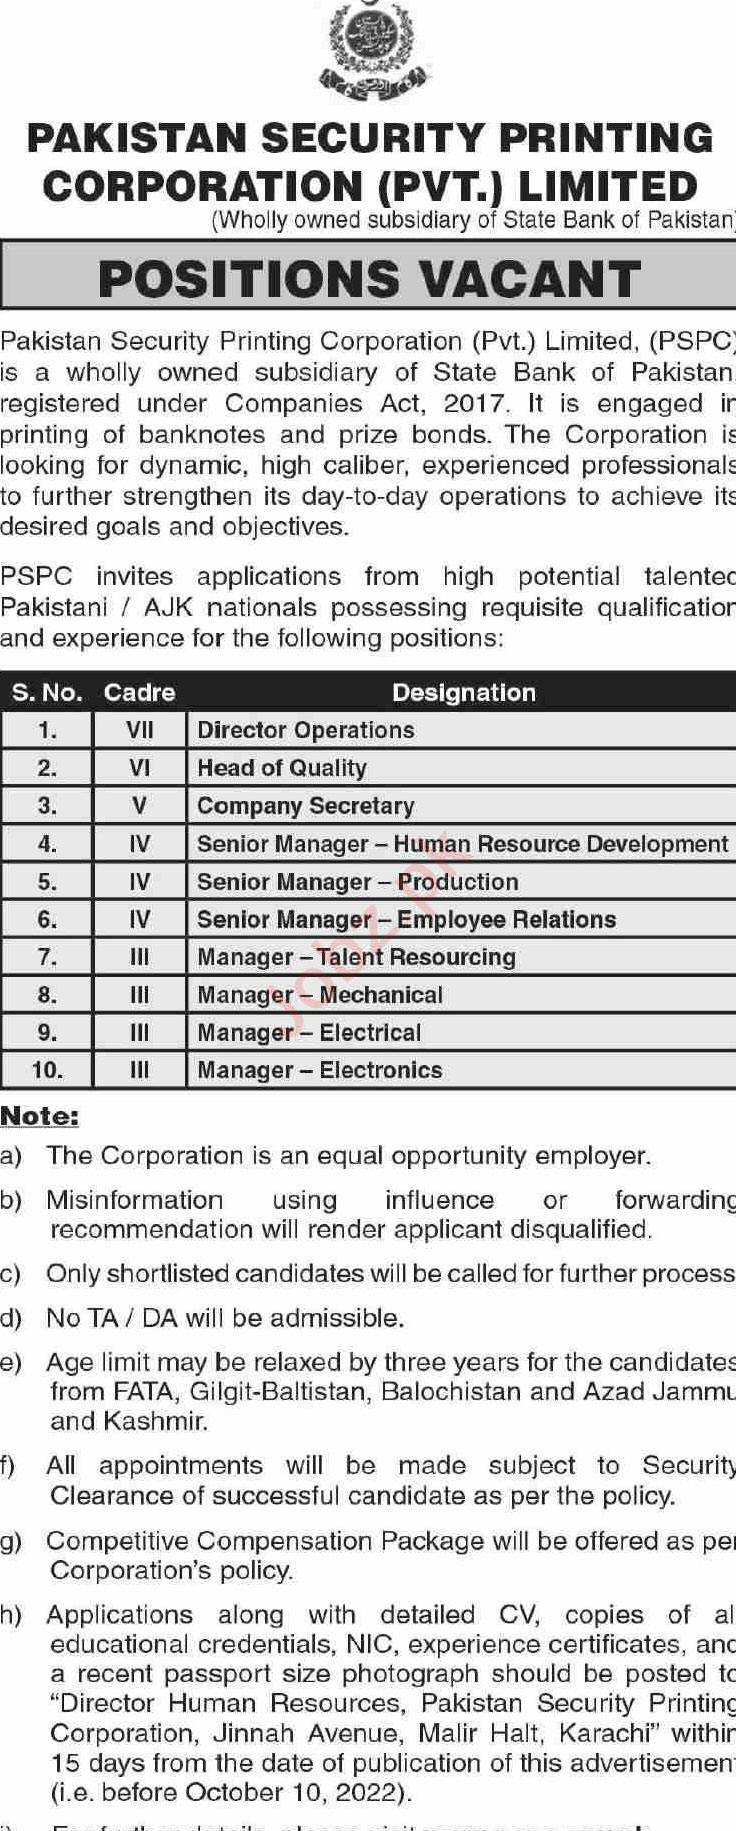 Pakistan Security Printing Corporation Karachi Job